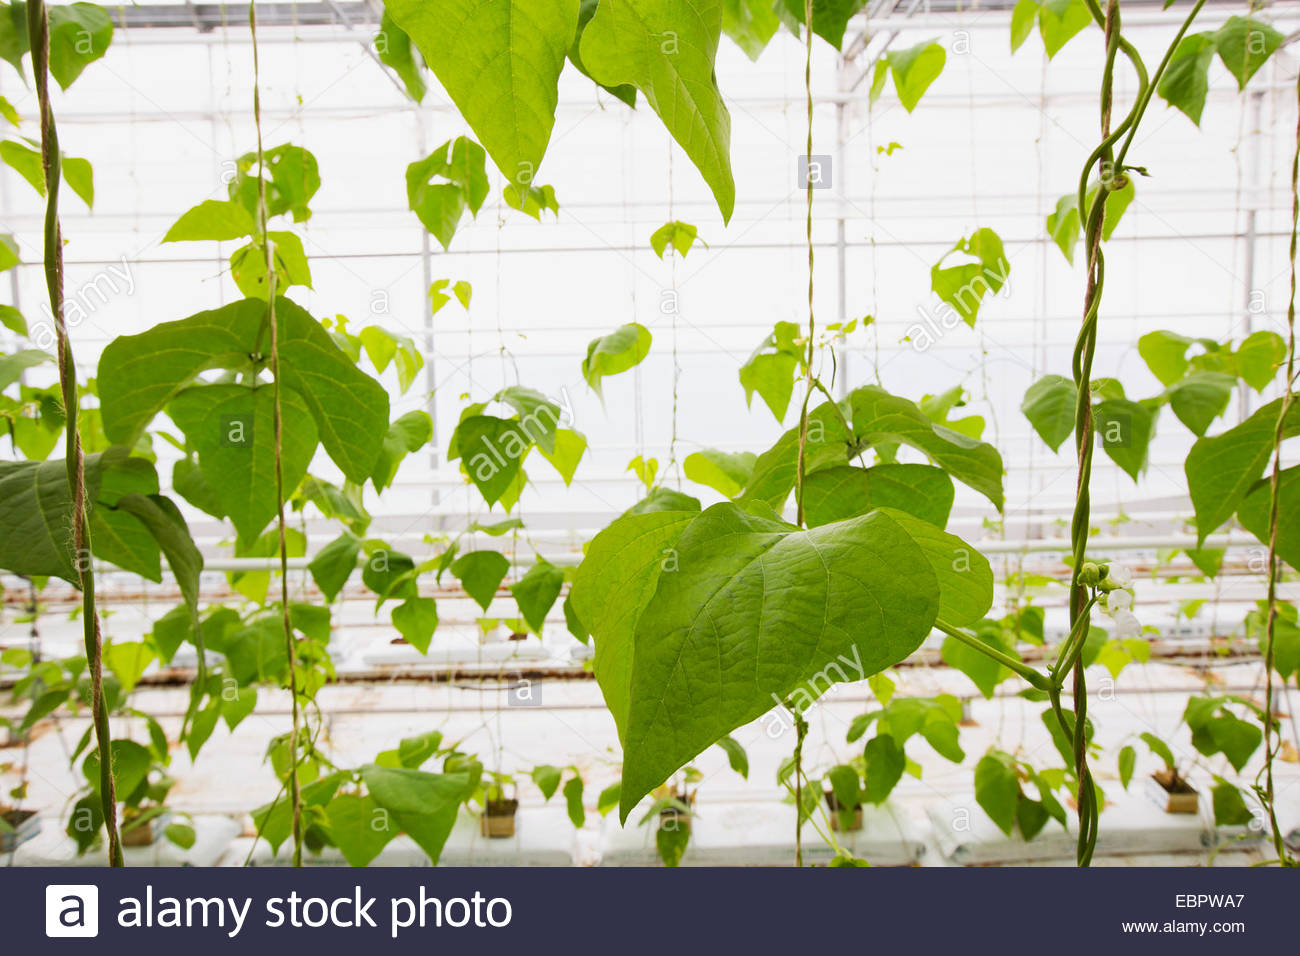 Vigne con foglie verdi che crescono in serra Foto Stock